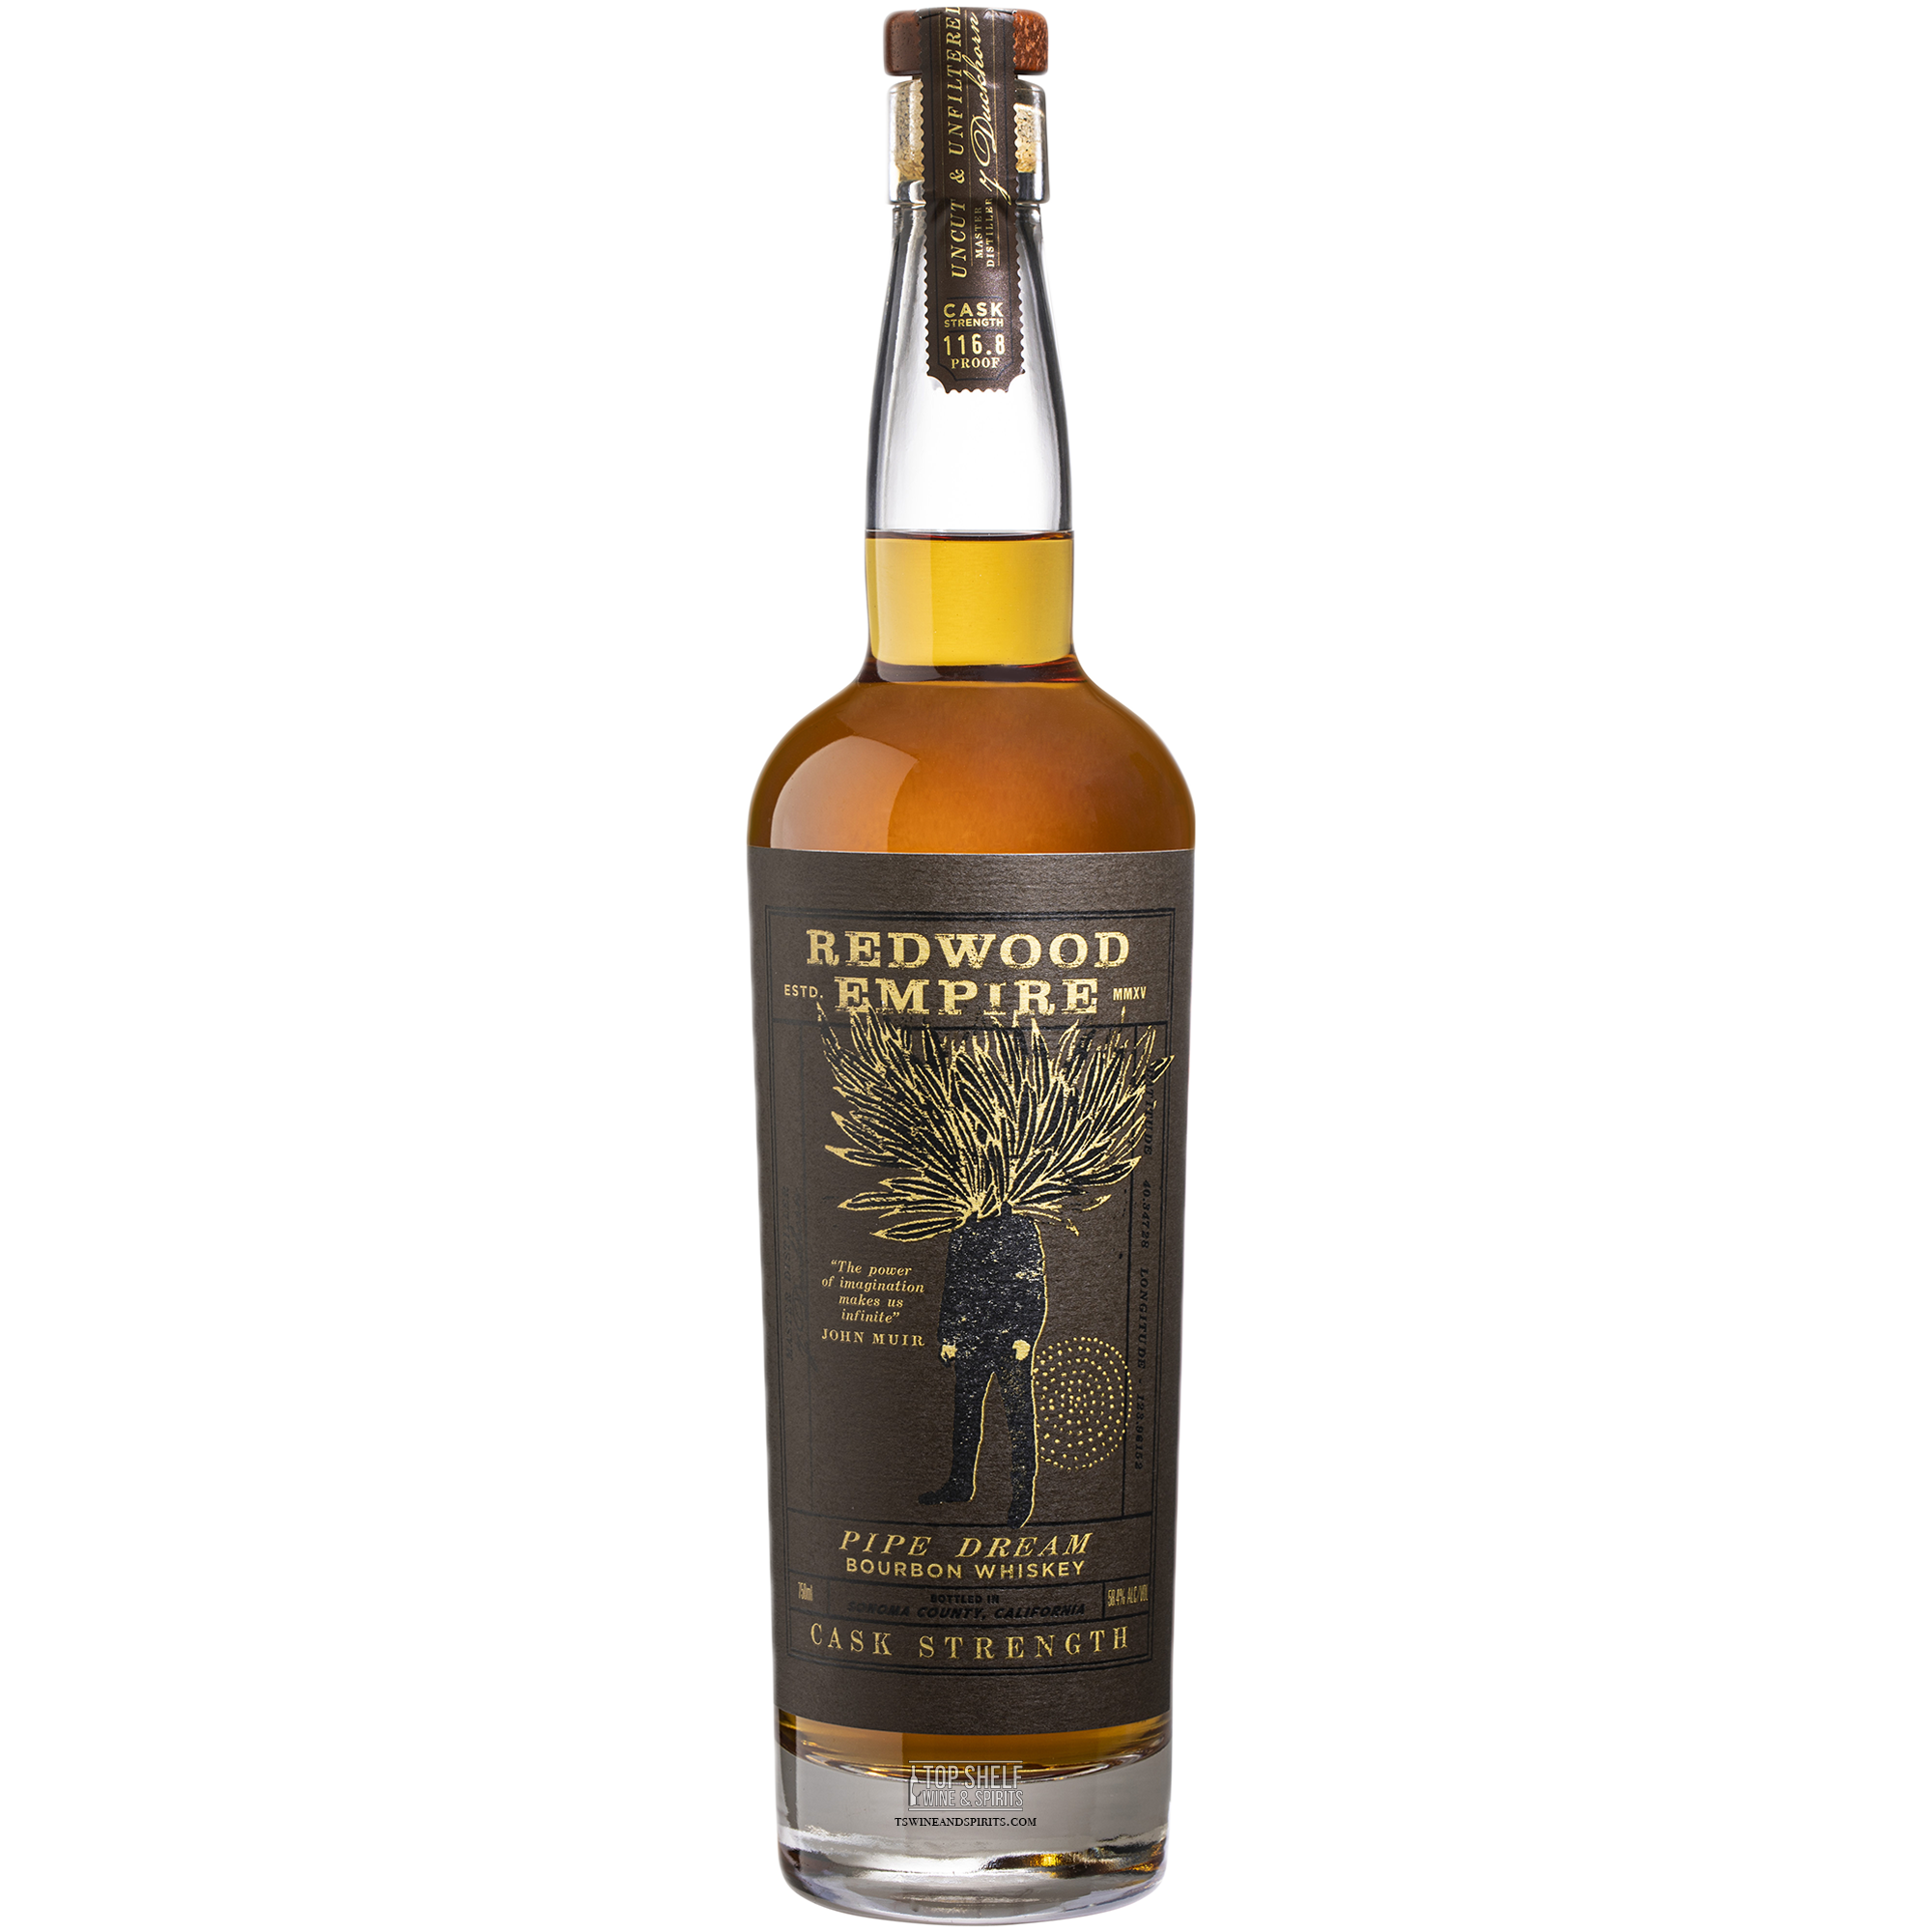 Redwood Empire "Pipe Dream" Cask Strength Bourbon